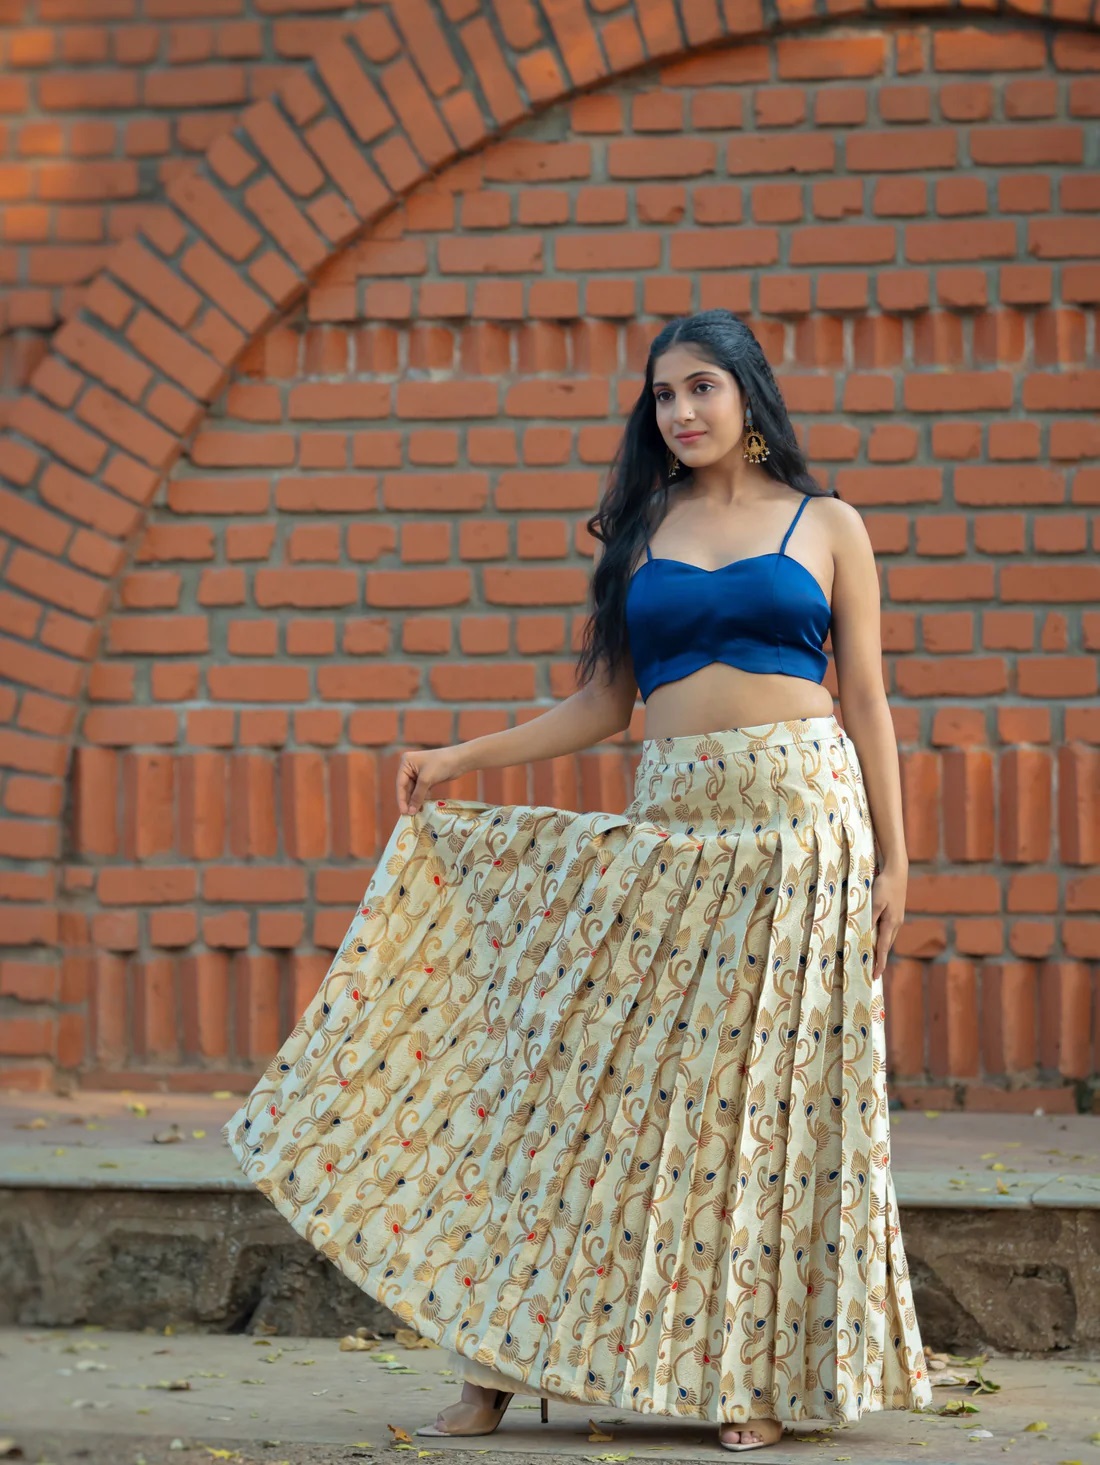 Buy High Waisted Skirt, Maxi Black Skirt, Polka Dot Skirt, Flare Skirt,  Autumn Skirt, Formal Skirt, Long Skirt, Plus Size Skirt, Cocktail Skirt  Online in India - Etsy